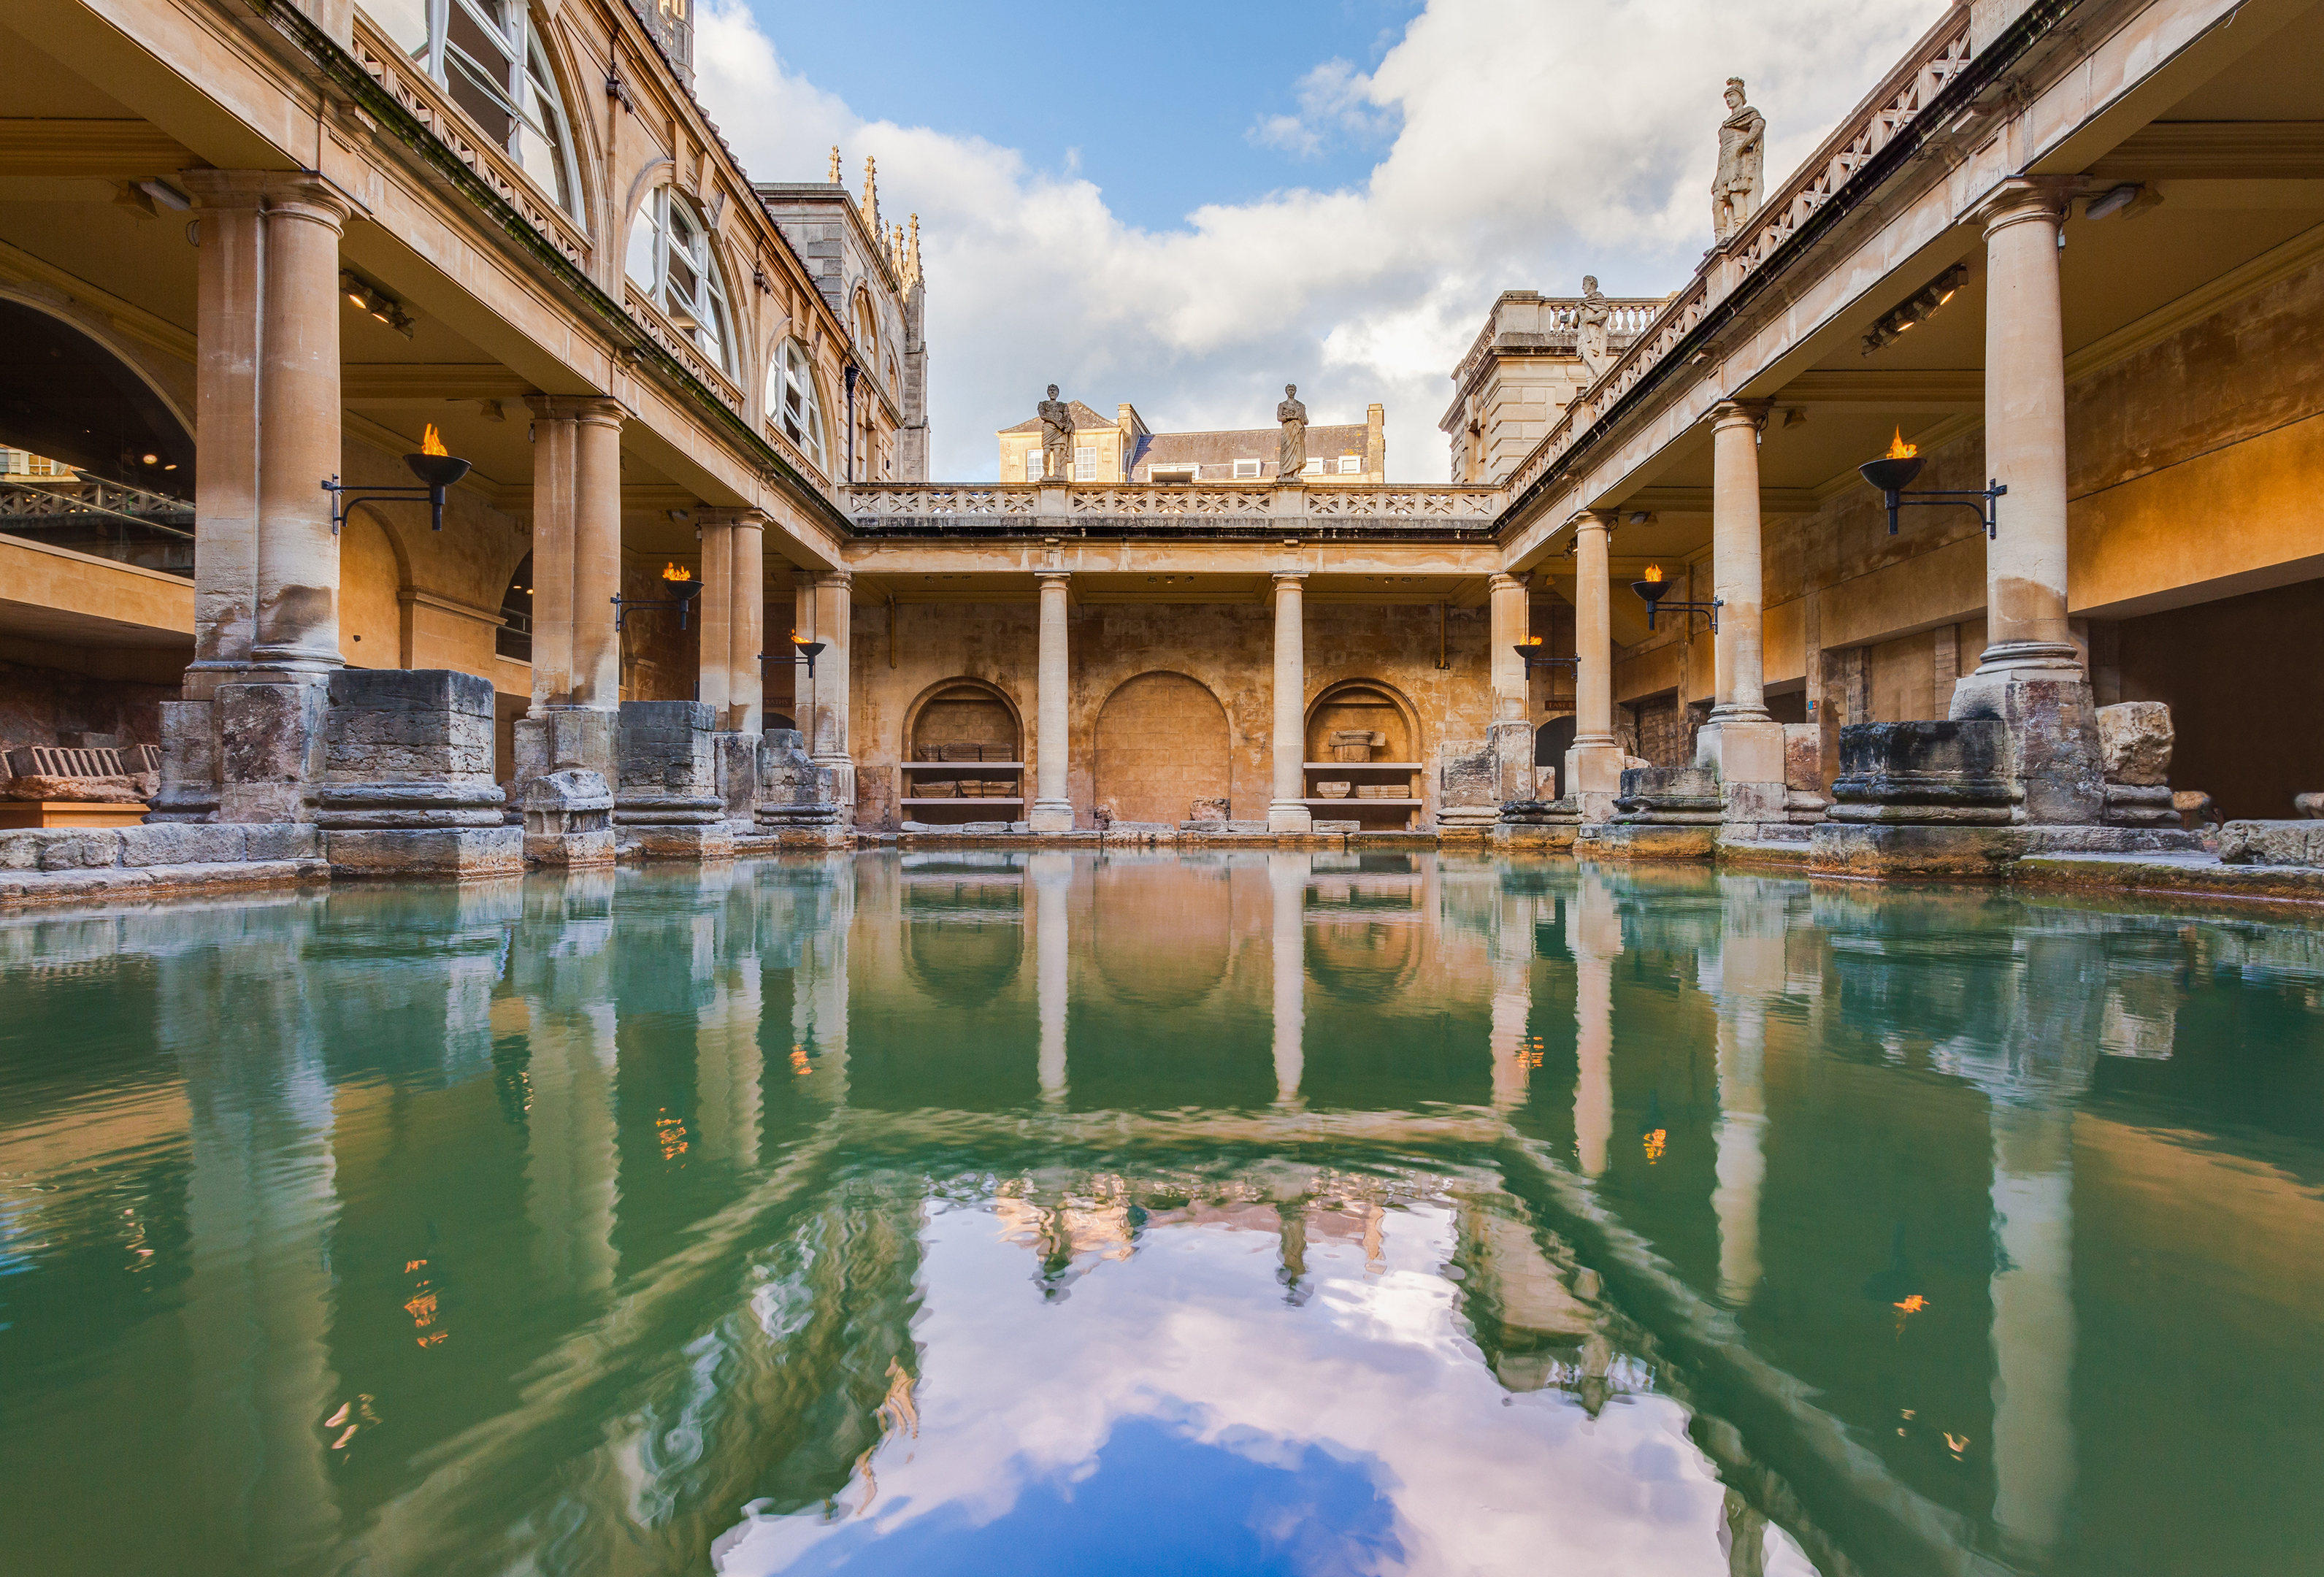 Roman baths, Bath, England by Diego Delso licensed under CC BY-SA 2.0